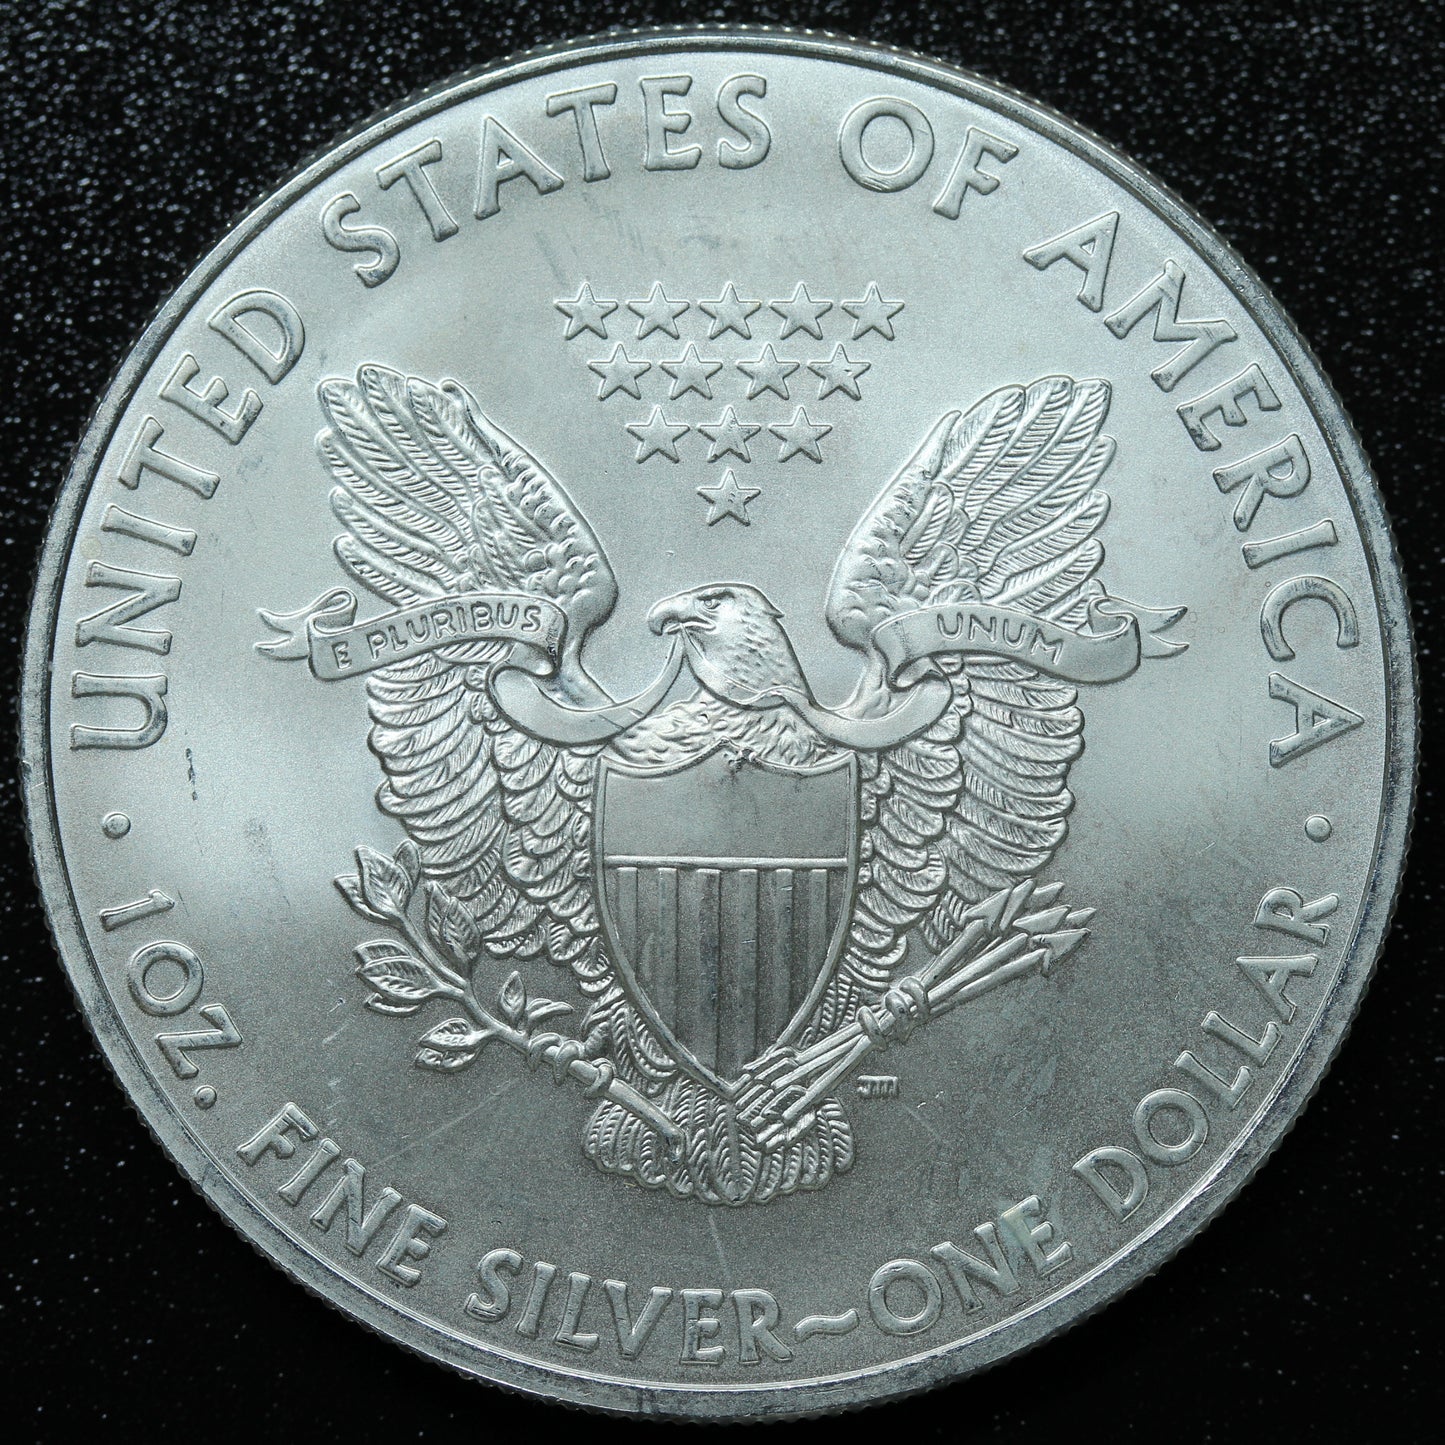 2009 American Silver Eagle $1 .999 Fine Silver Coin Marks/Spots